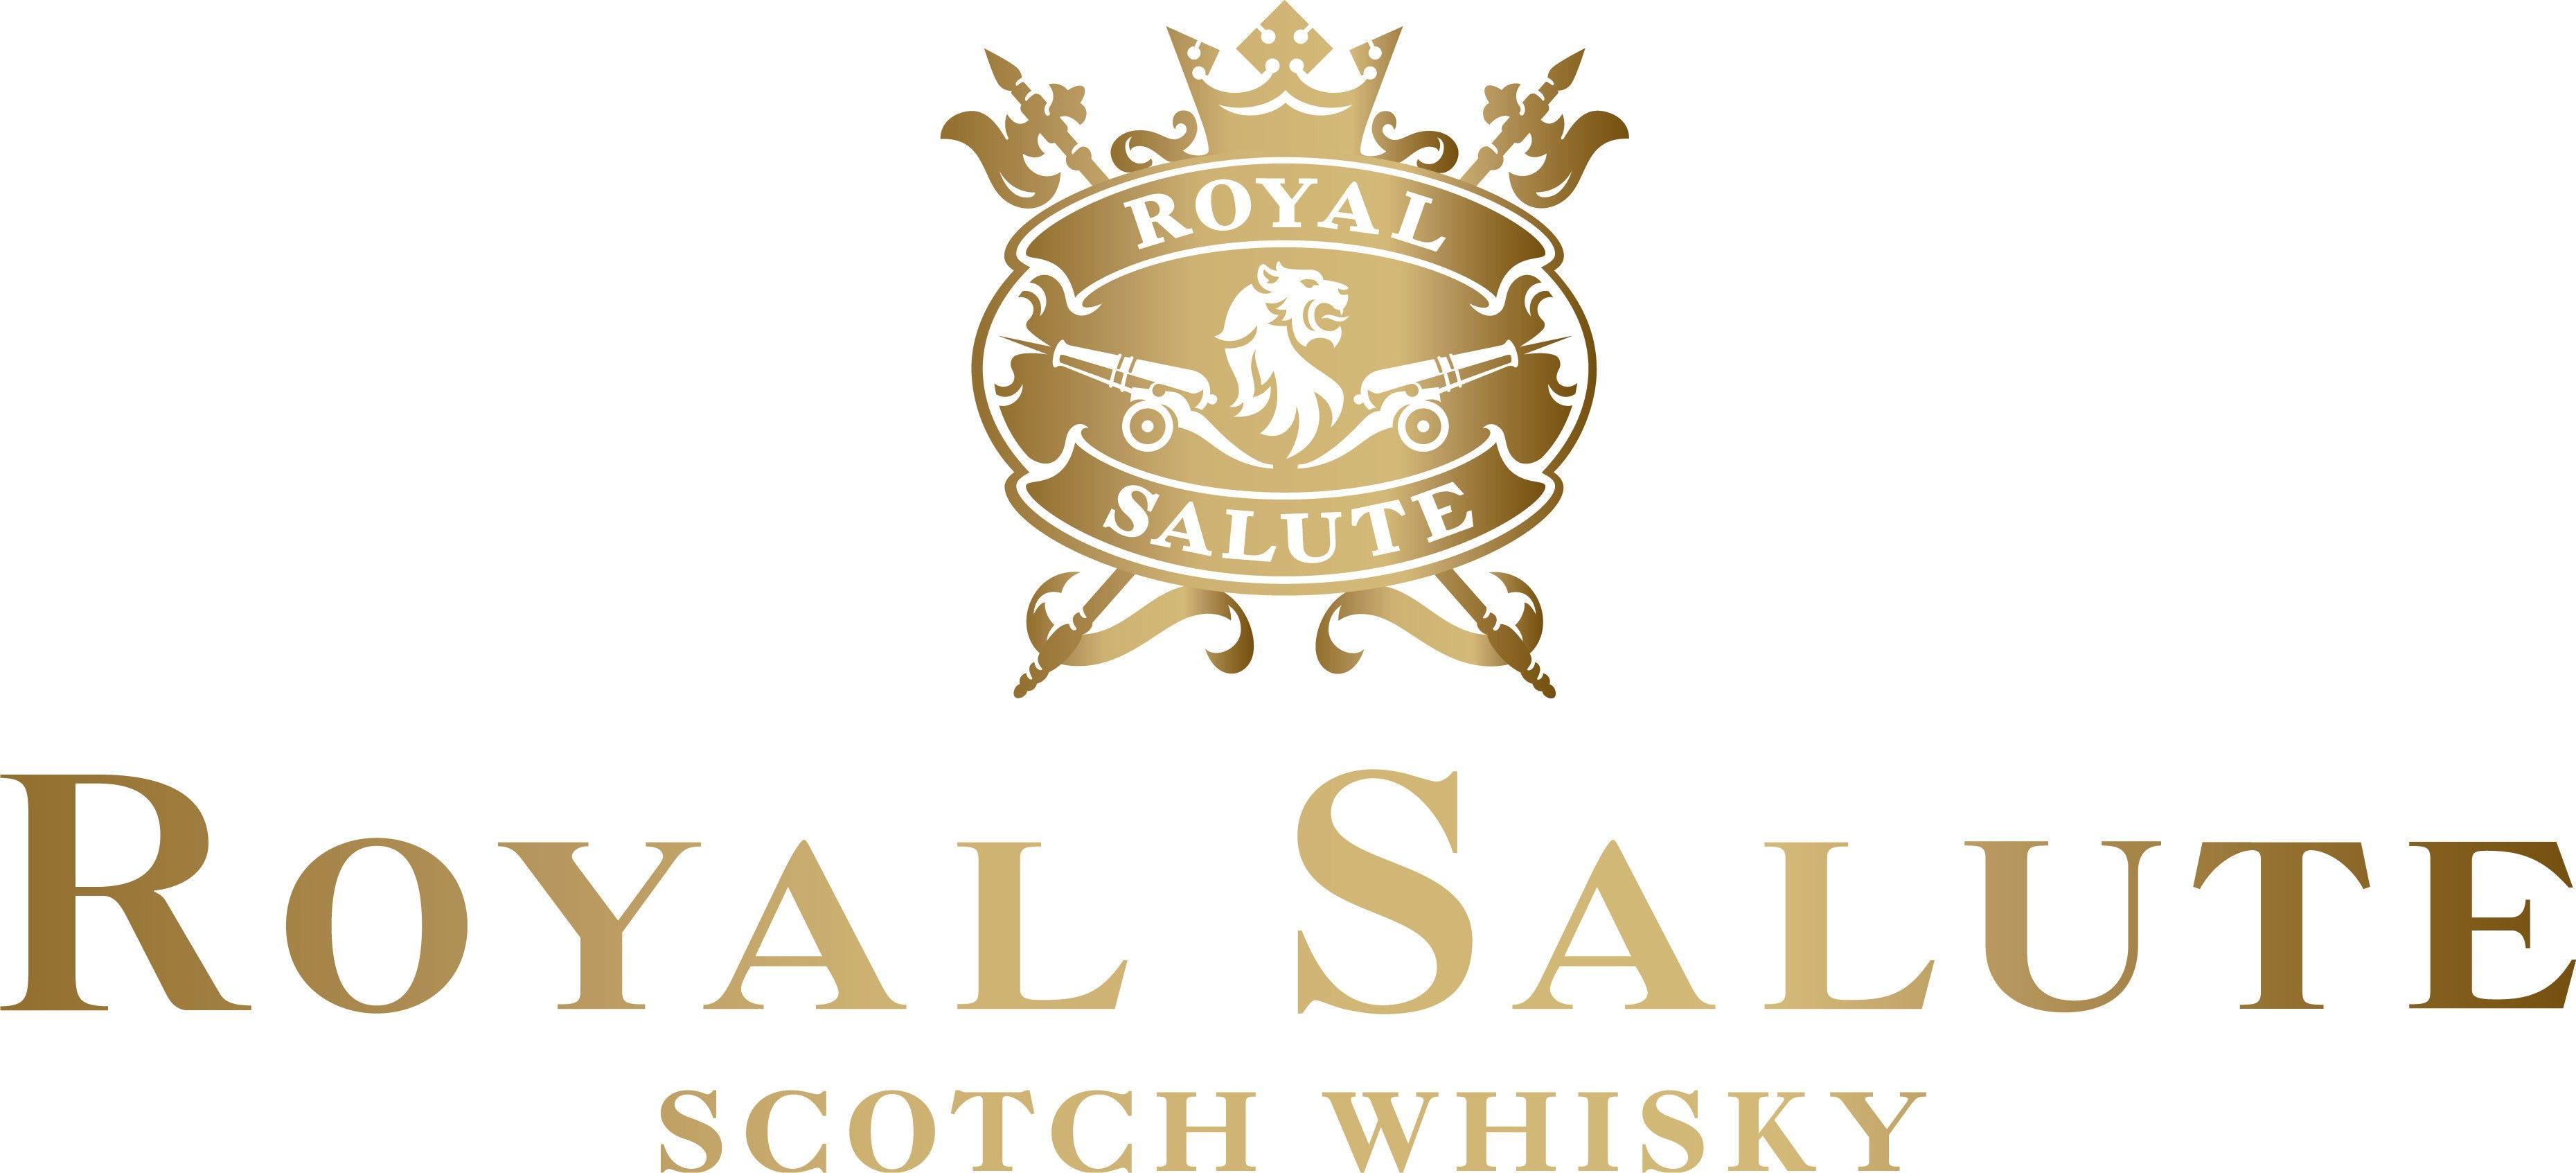 Scotch Whiskey Logo - WhiskyIntelligence.com » Blog Archive » Royal Salute Launches ...